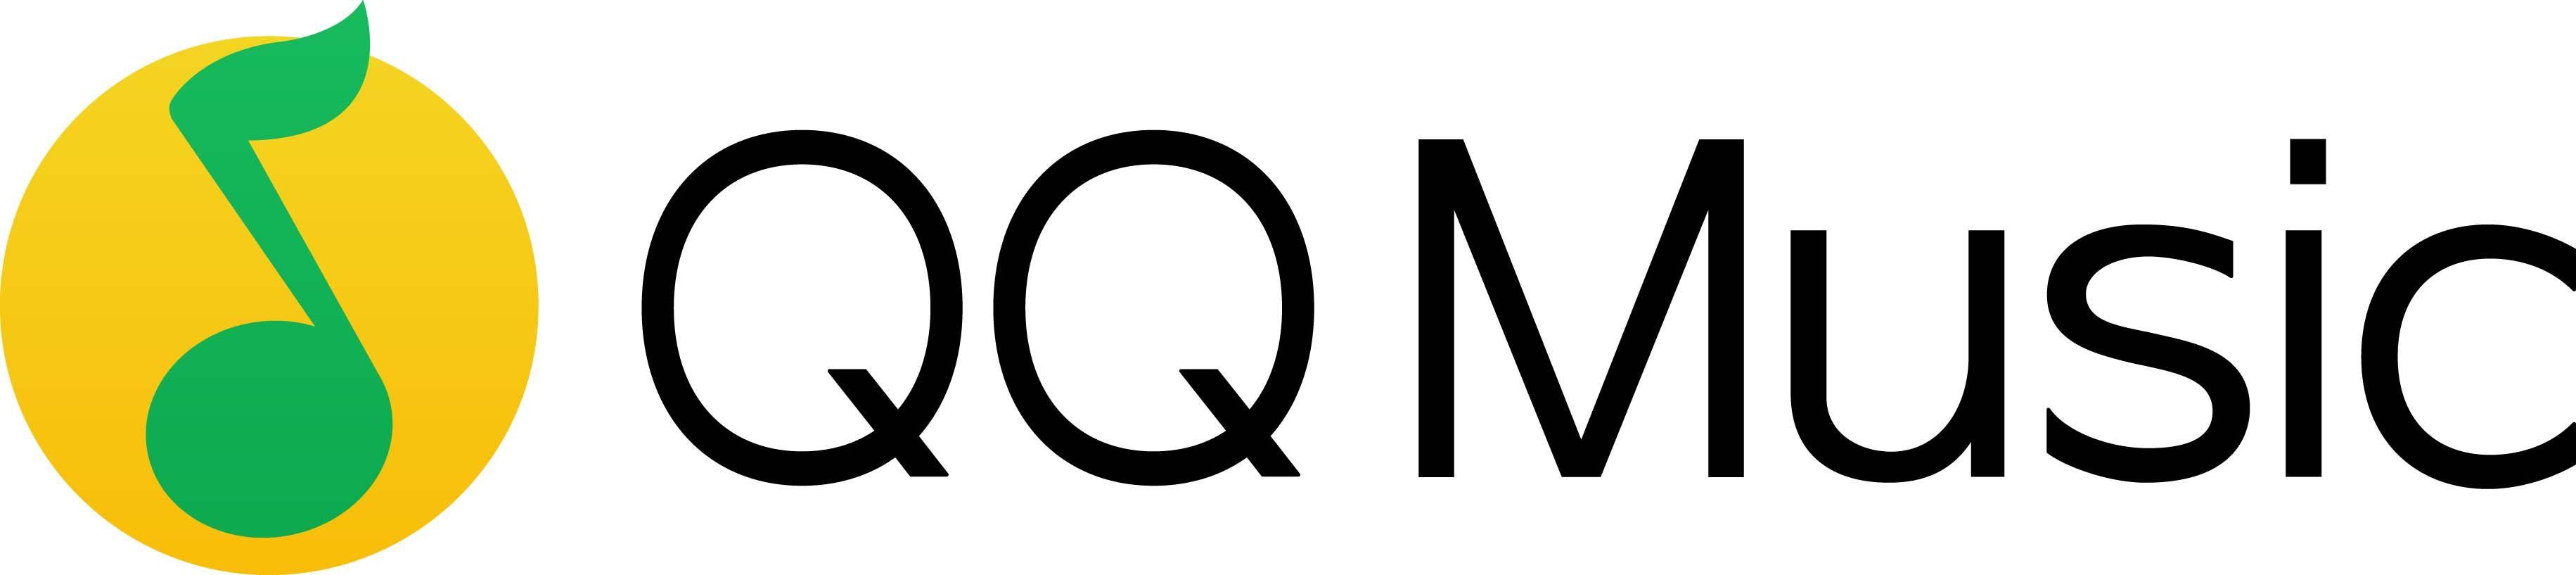 Qq.com Logo - Tencent / QQ Music